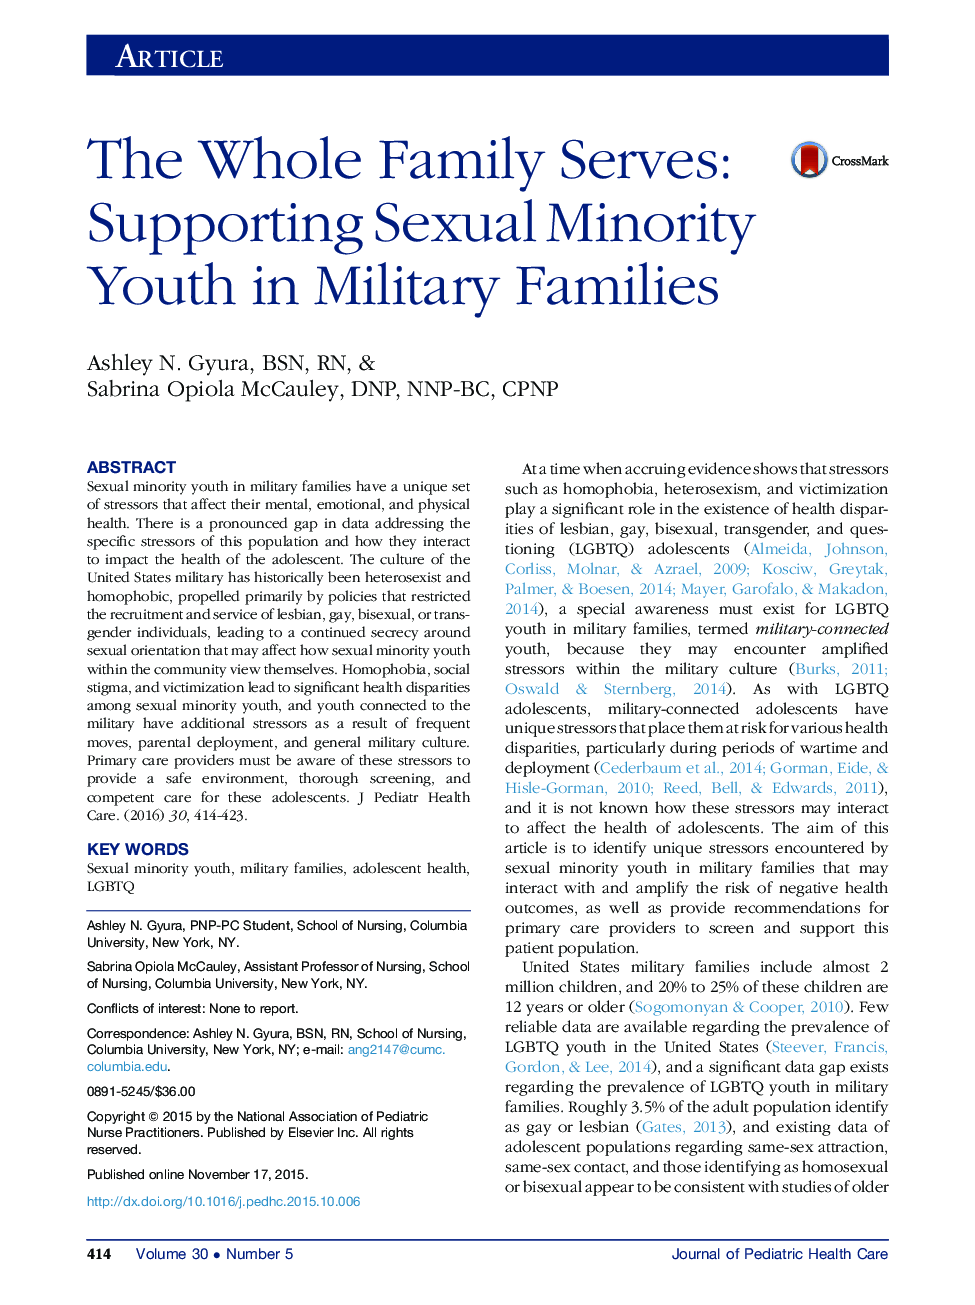 کل خانواده خدمت می کند: حمایت از جوانان اقلیت جنسی در خانواده های نظامی